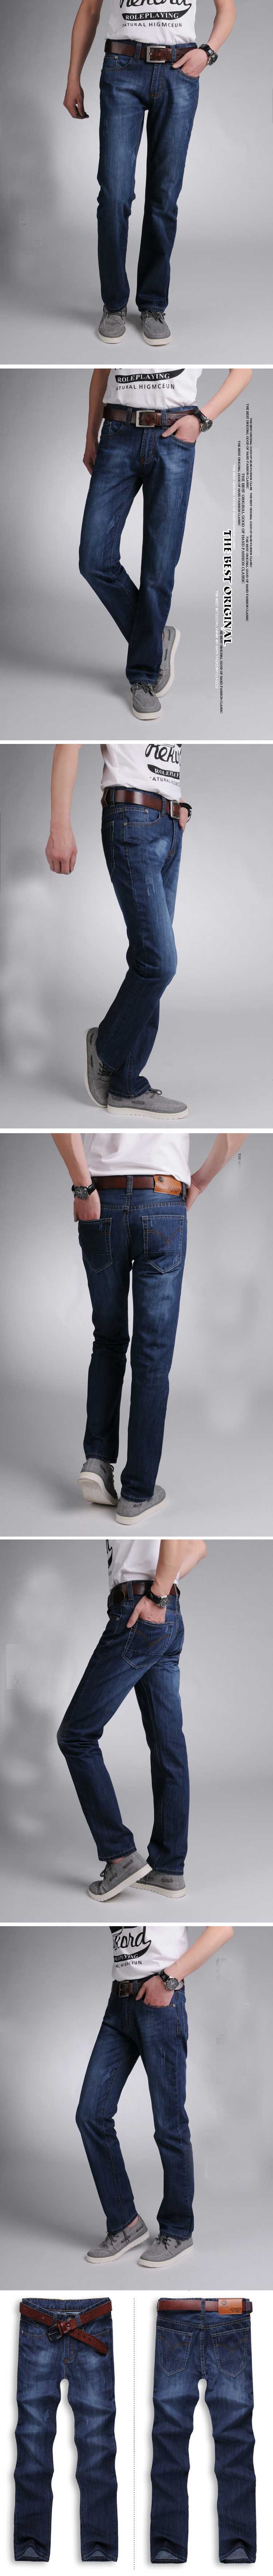 cari celana jeans pria model regular ? klik disini dan pesan online sekarang , proses mudah dan pengiriman cepat. koleksi celana jeans terlengkap